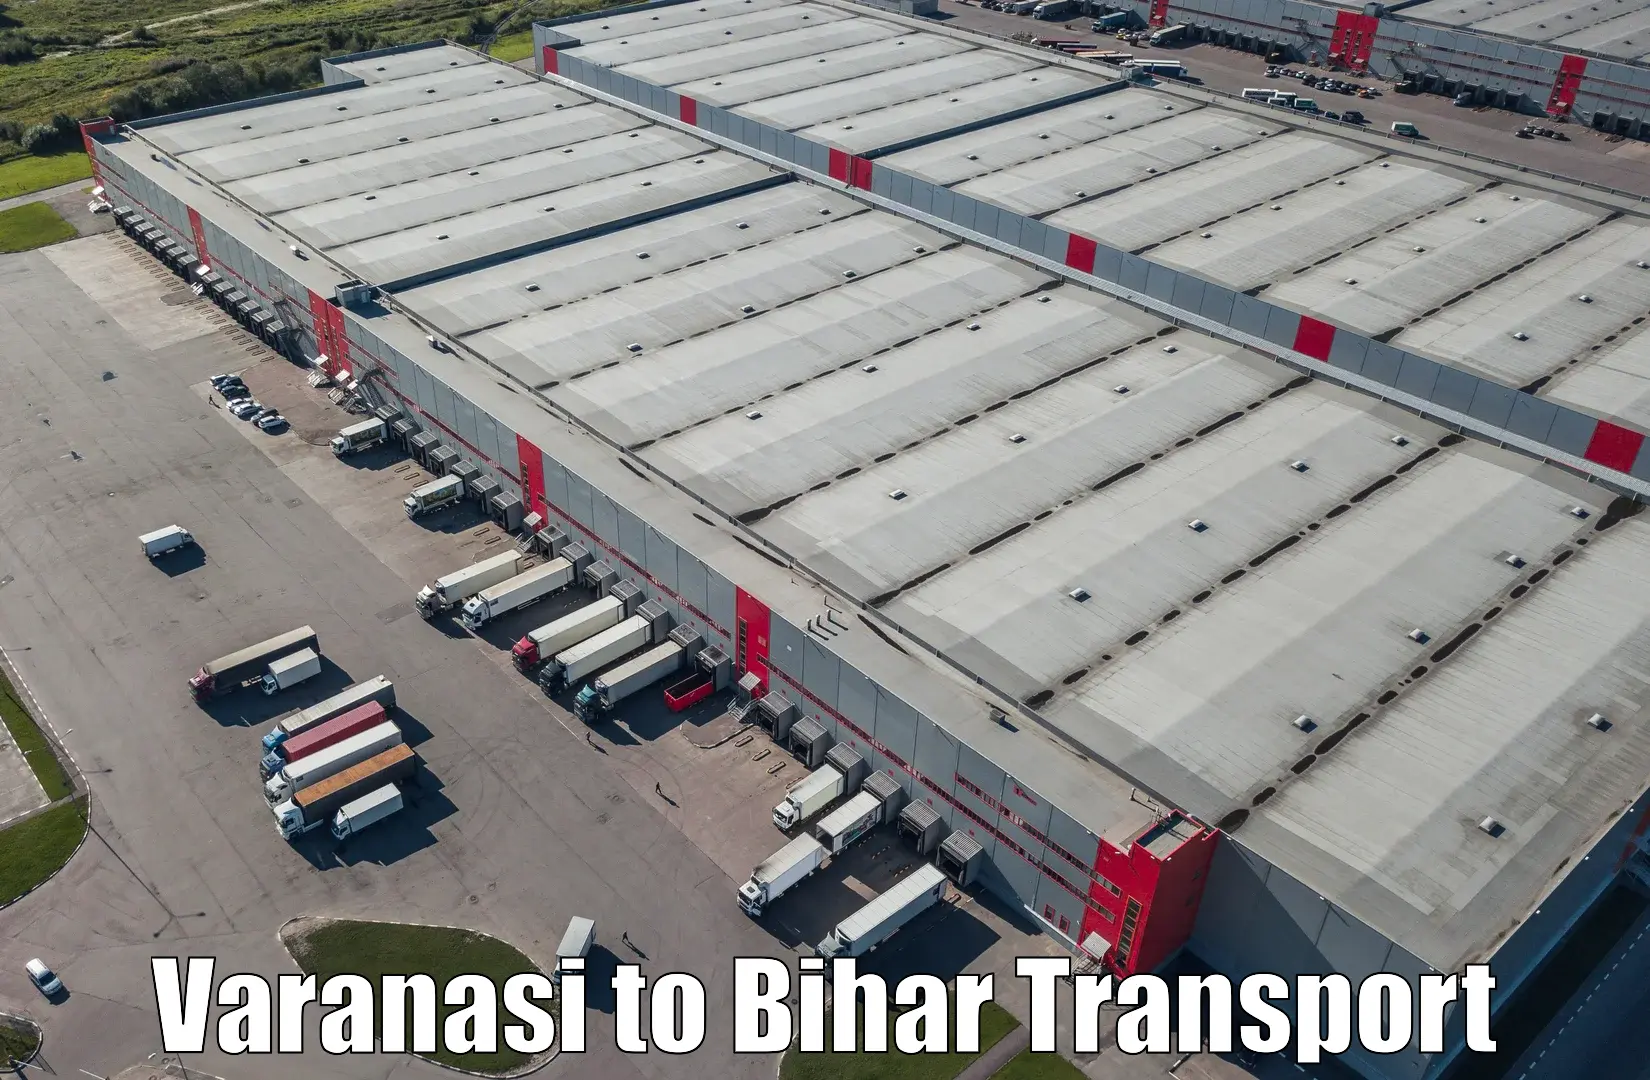 Nearby transport service Varanasi to Dhaka